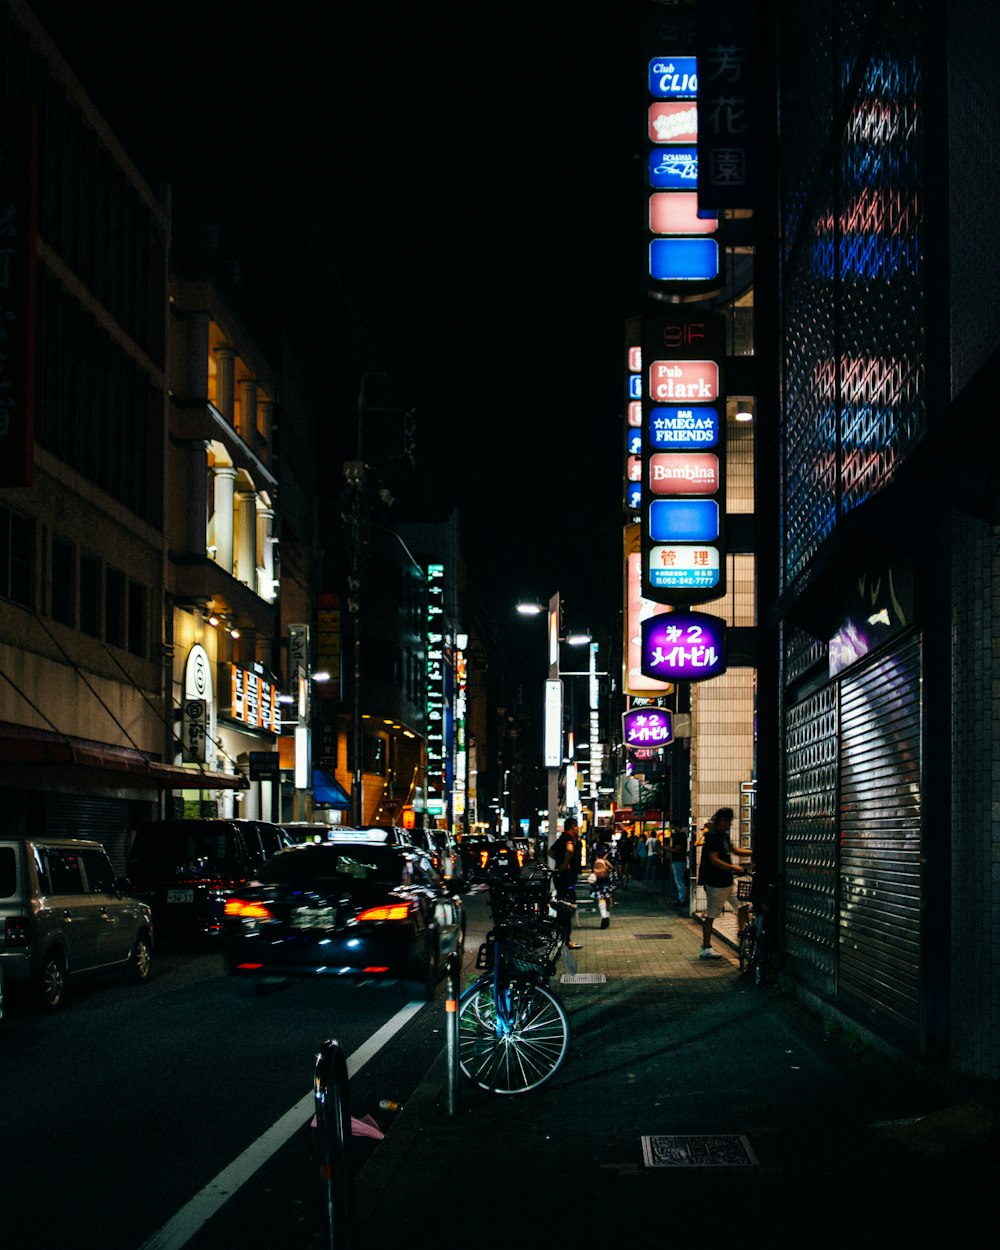 검은 재킷을 입은 남자가 밤 시간에 도로에서 자전거를 타고 있다